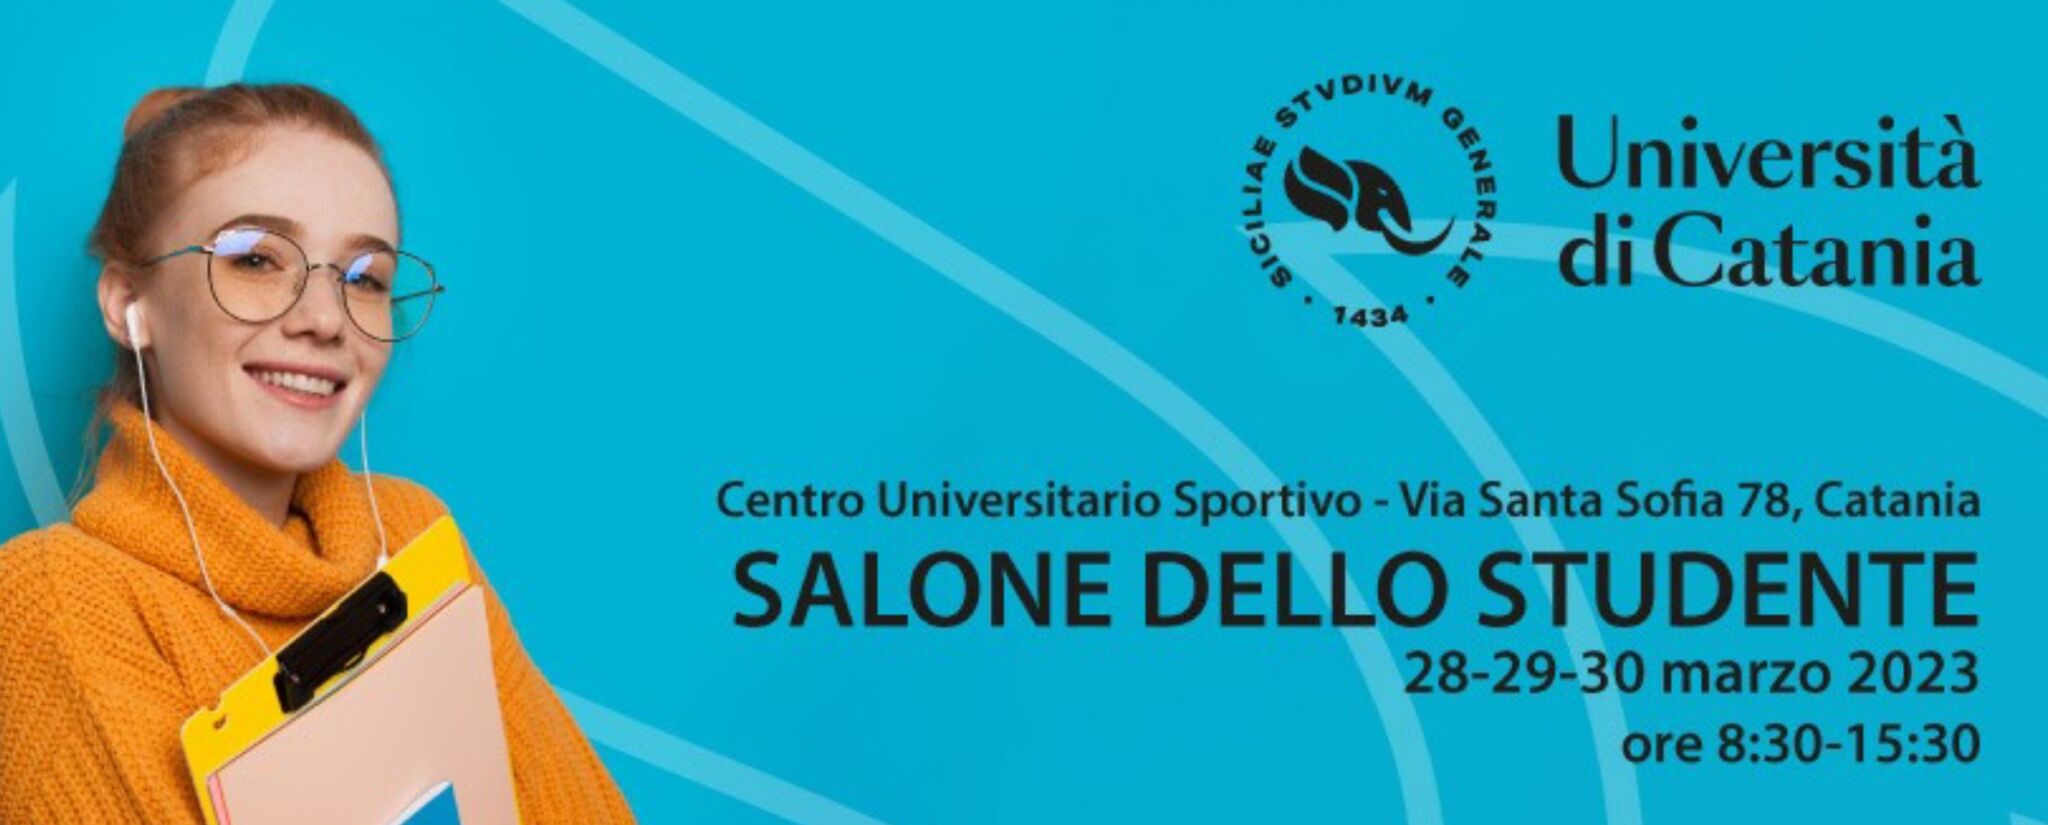 Salone dello Studente Unict dal 28 al 30 marzo al Cus Catania